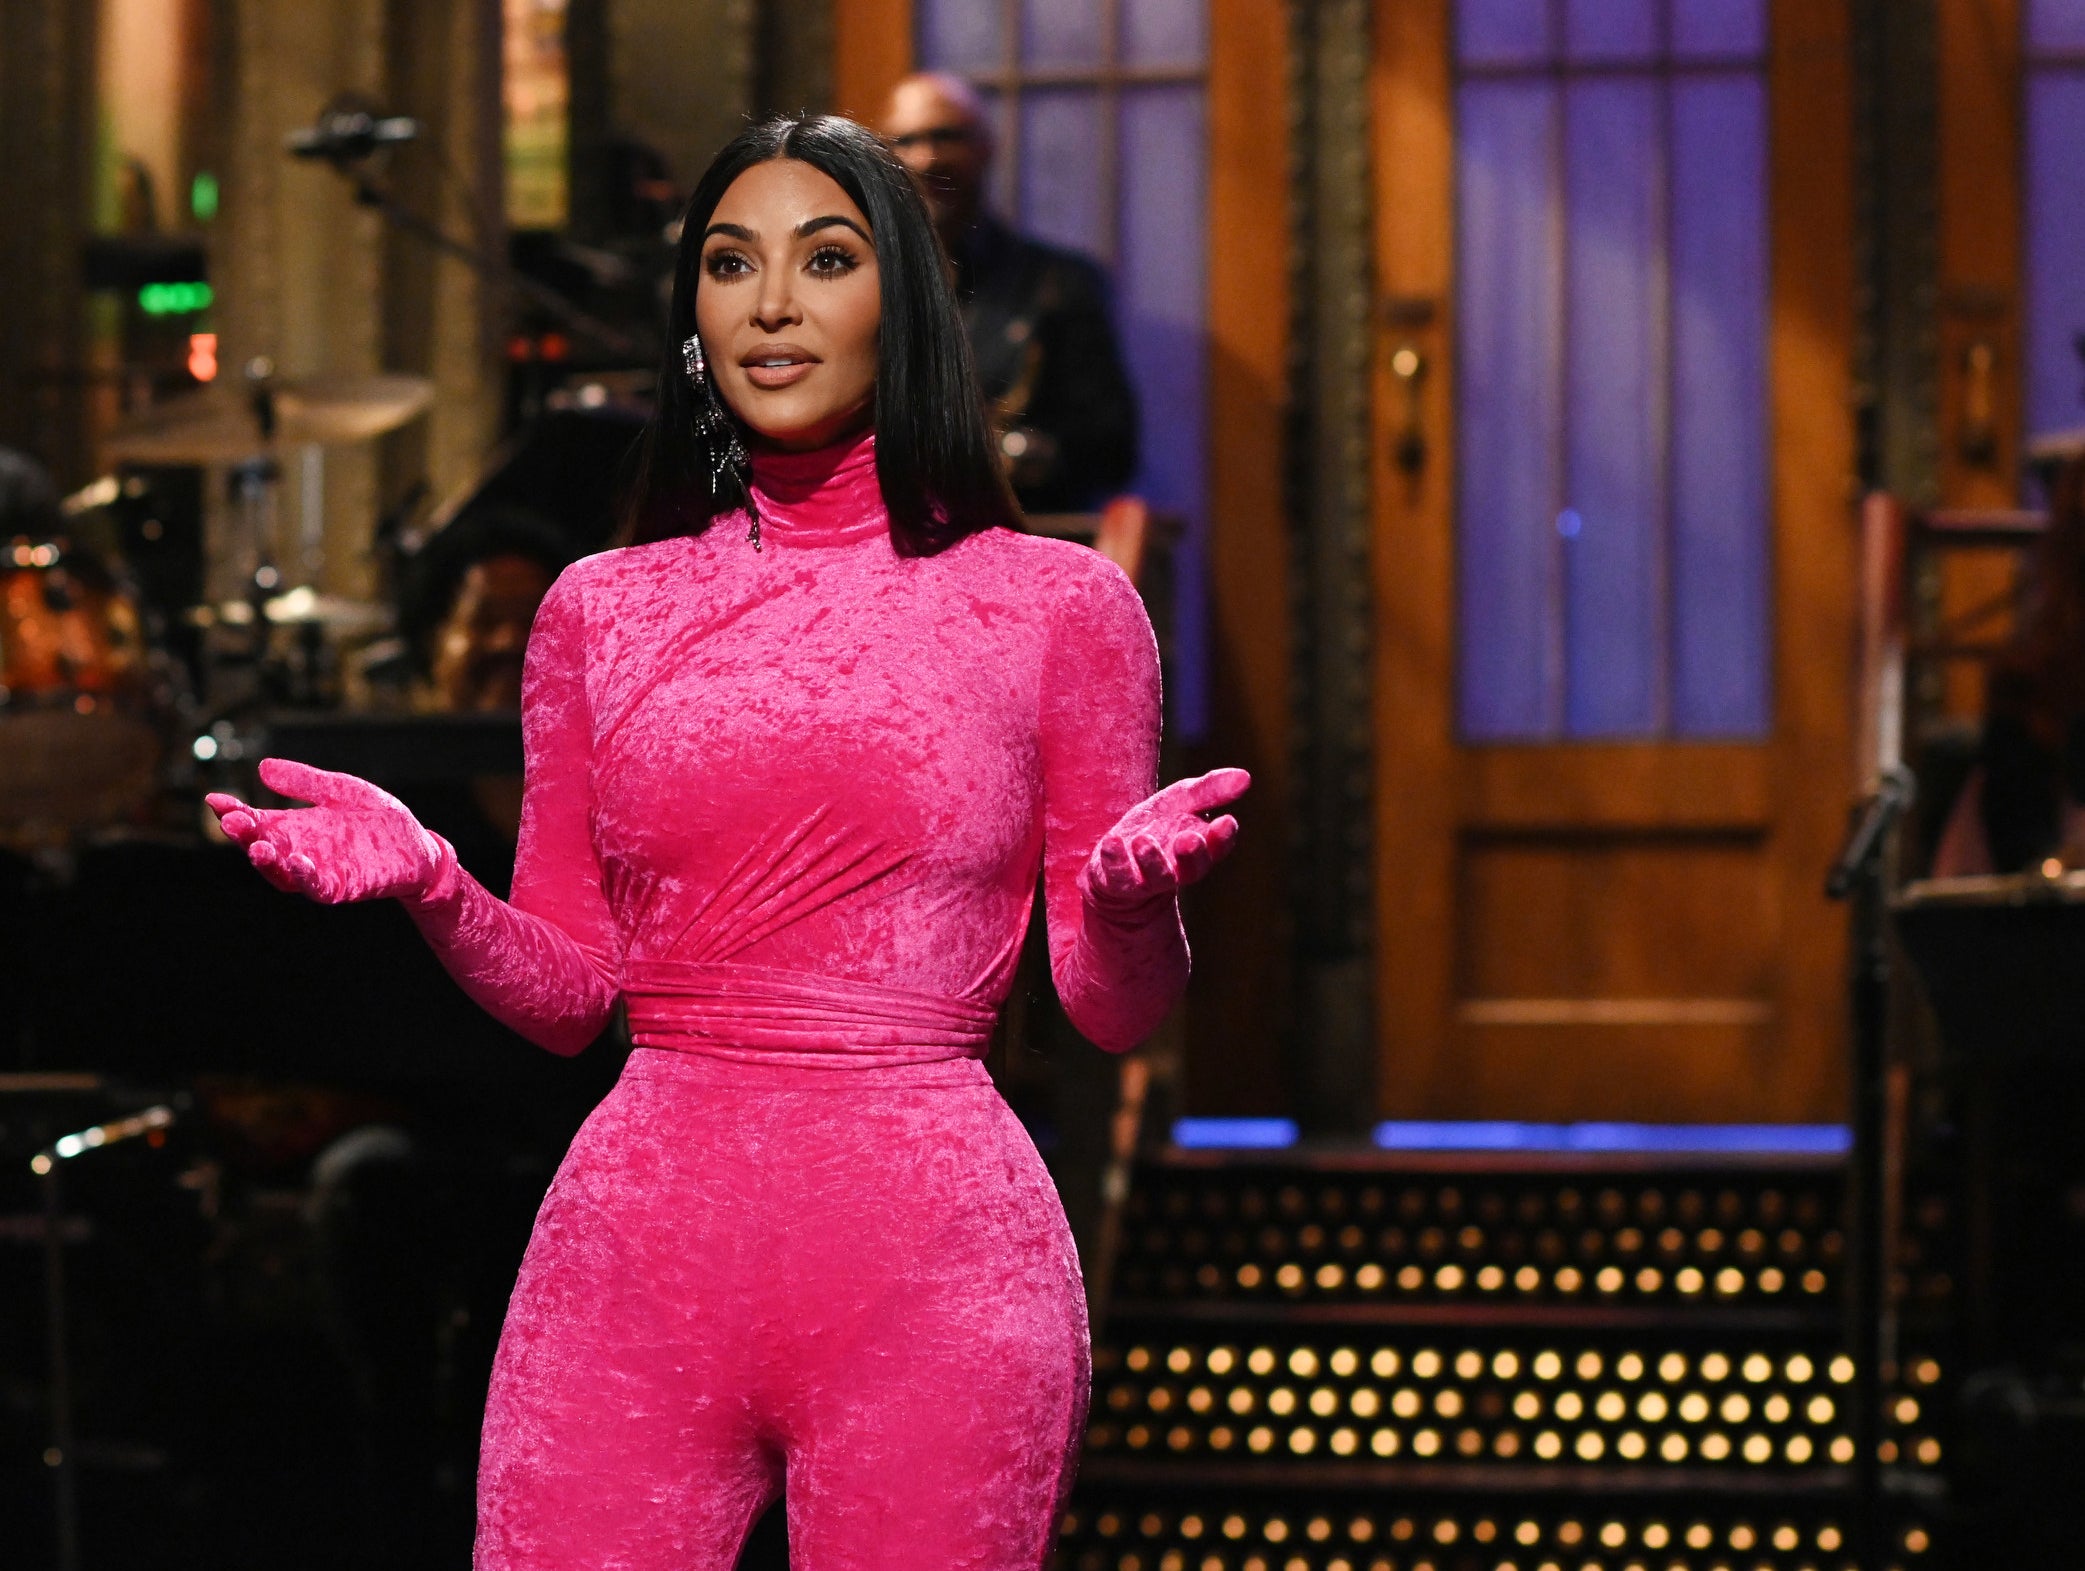 Kim Kardashian during her opening SNL monologue